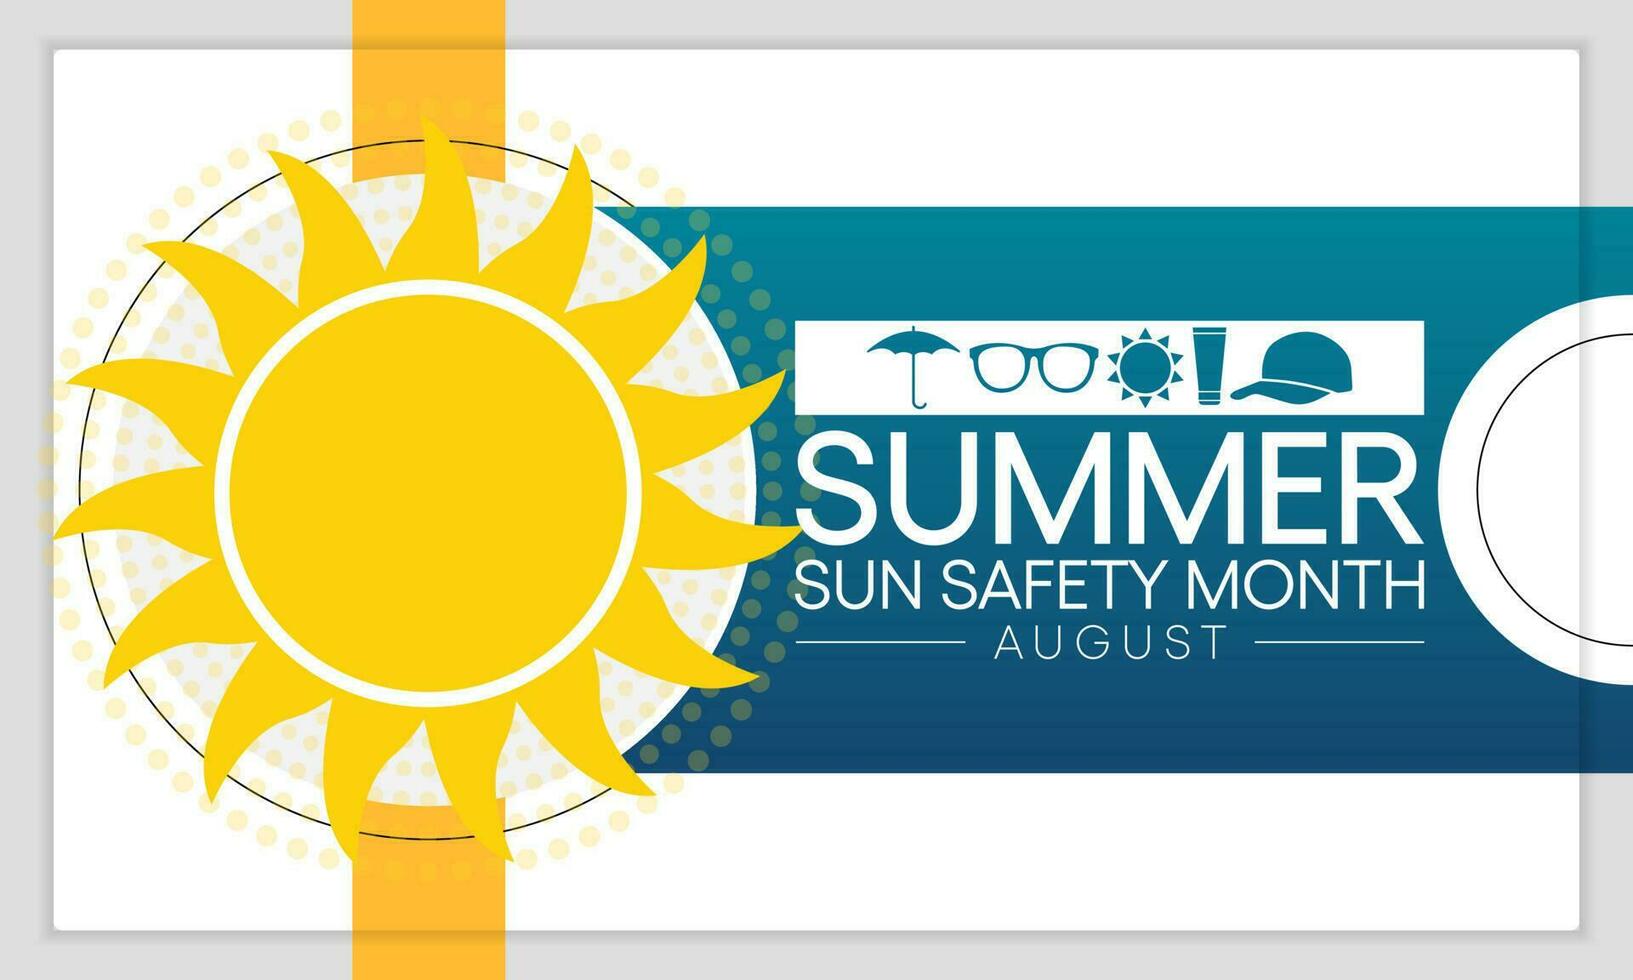 sommar Sol säkerhet månad är observerats varje år i augusti, berömd till medveten handla om några av de skadligt effekter av ultraviolett uv exponering, och tips till hjälp skydda människor under de sommar månader. vektor